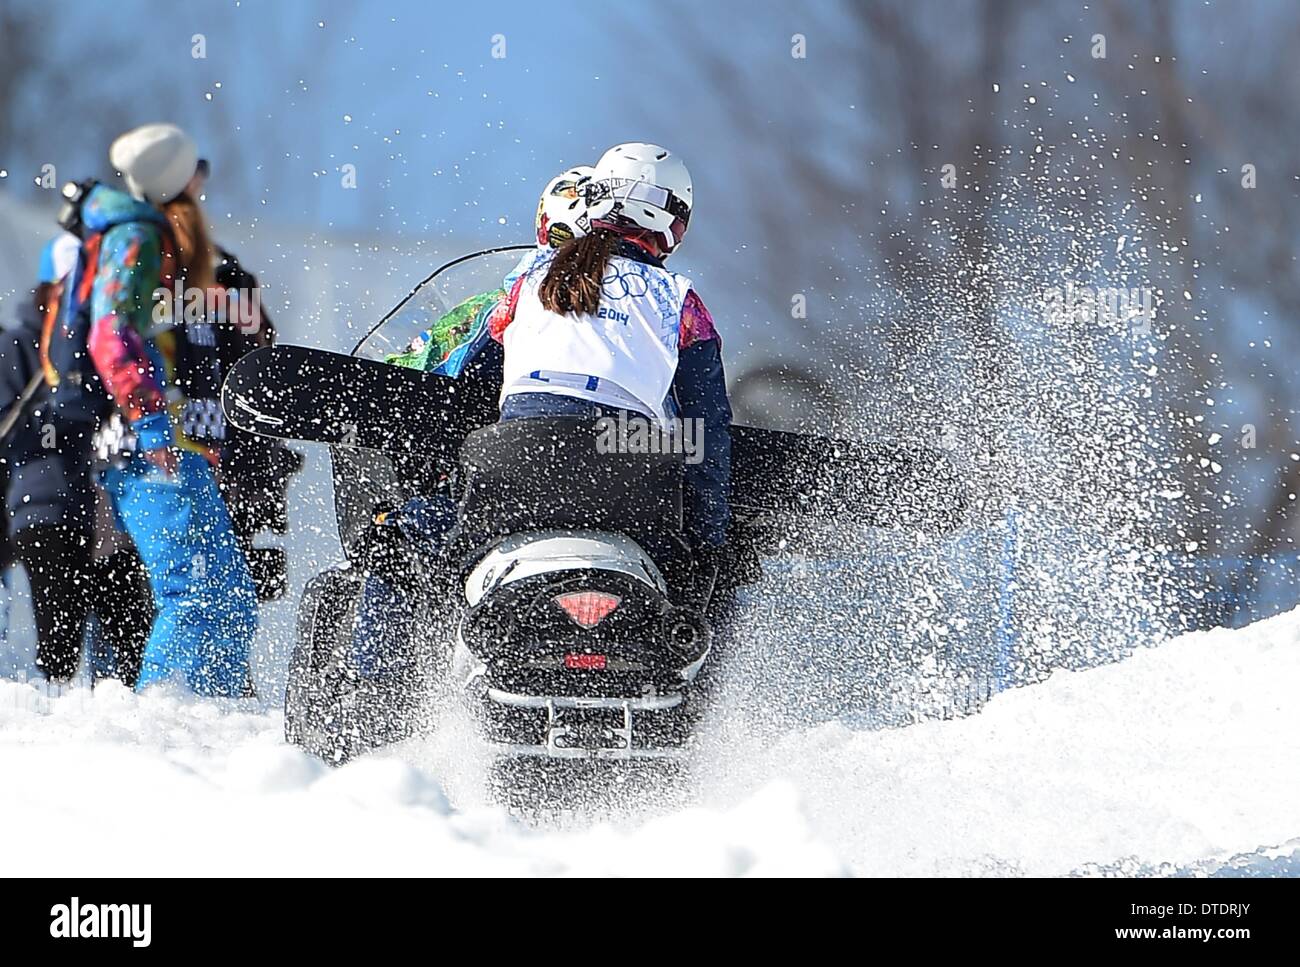 Zoe Gillings (GBR) dauert die Fahrt zurück nach oben nach der Qualifikation für das Halbfinale. Womens Snowbboard Cross - Rosa Khutor Extreme Park - Sotschi - Russland - 16.02.2014 Stockfoto